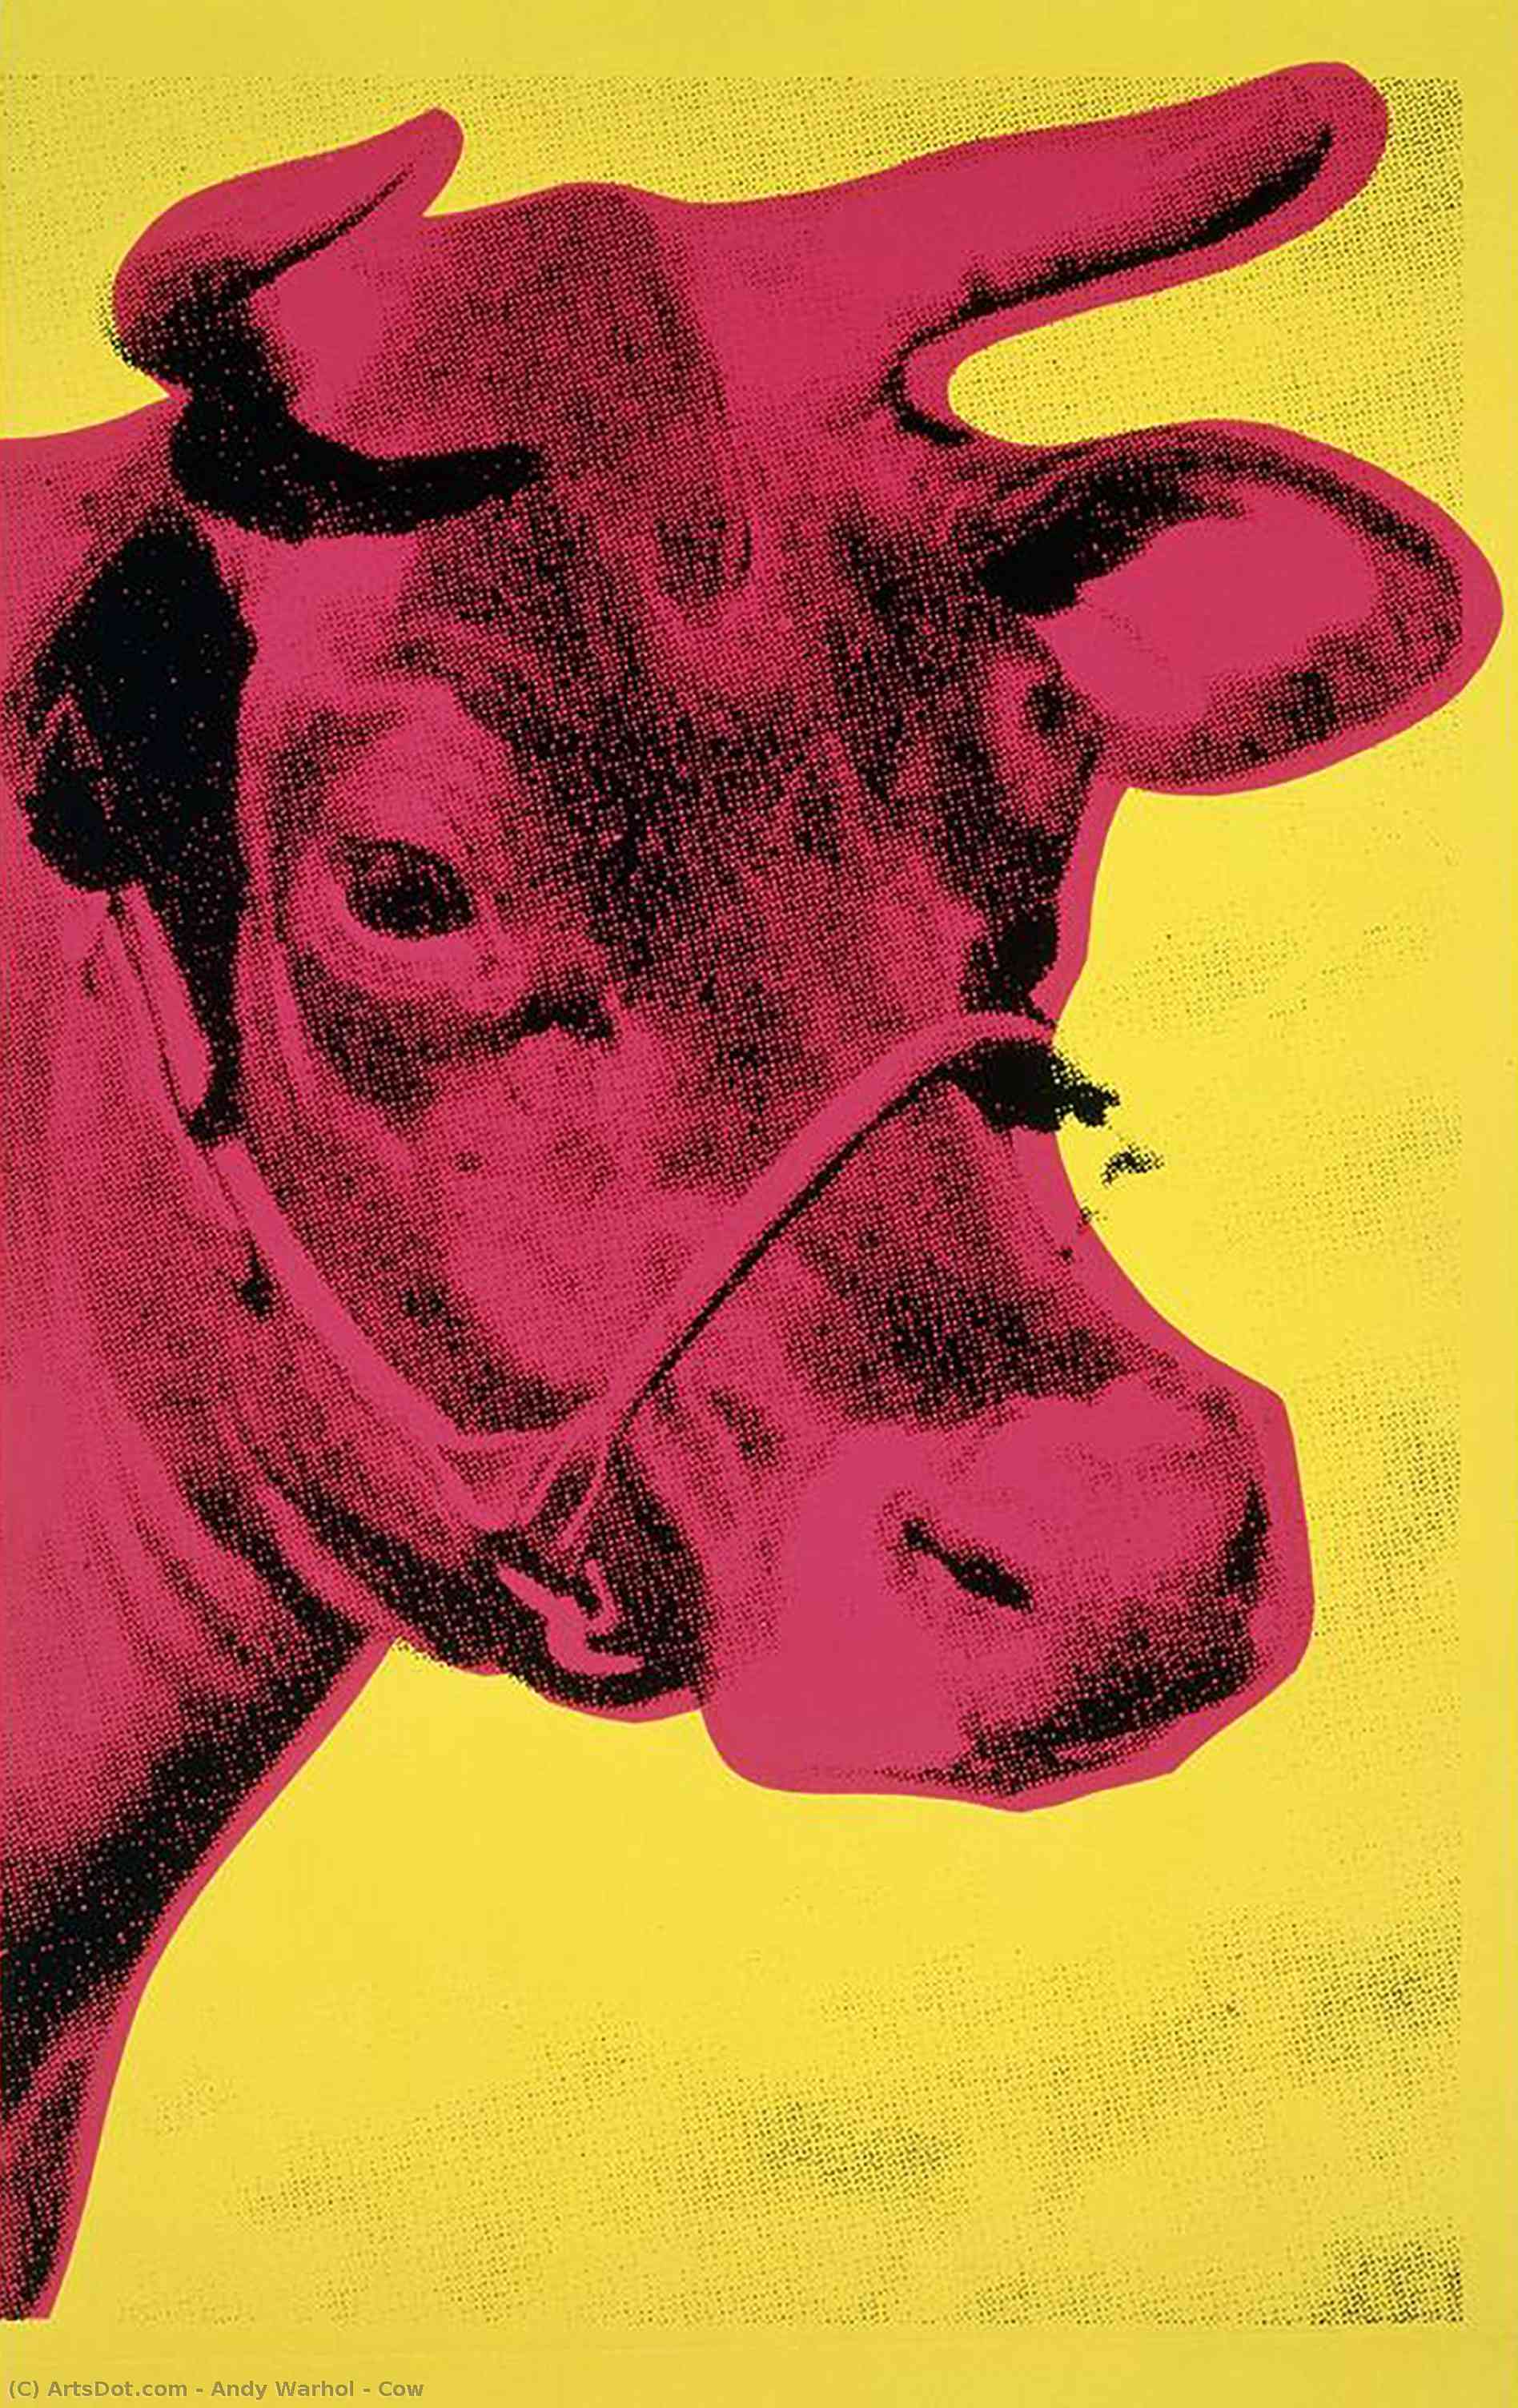 WikiOO.org - Энциклопедия изобразительного искусства - Живопись, Картины  Andy Warhol - Корова